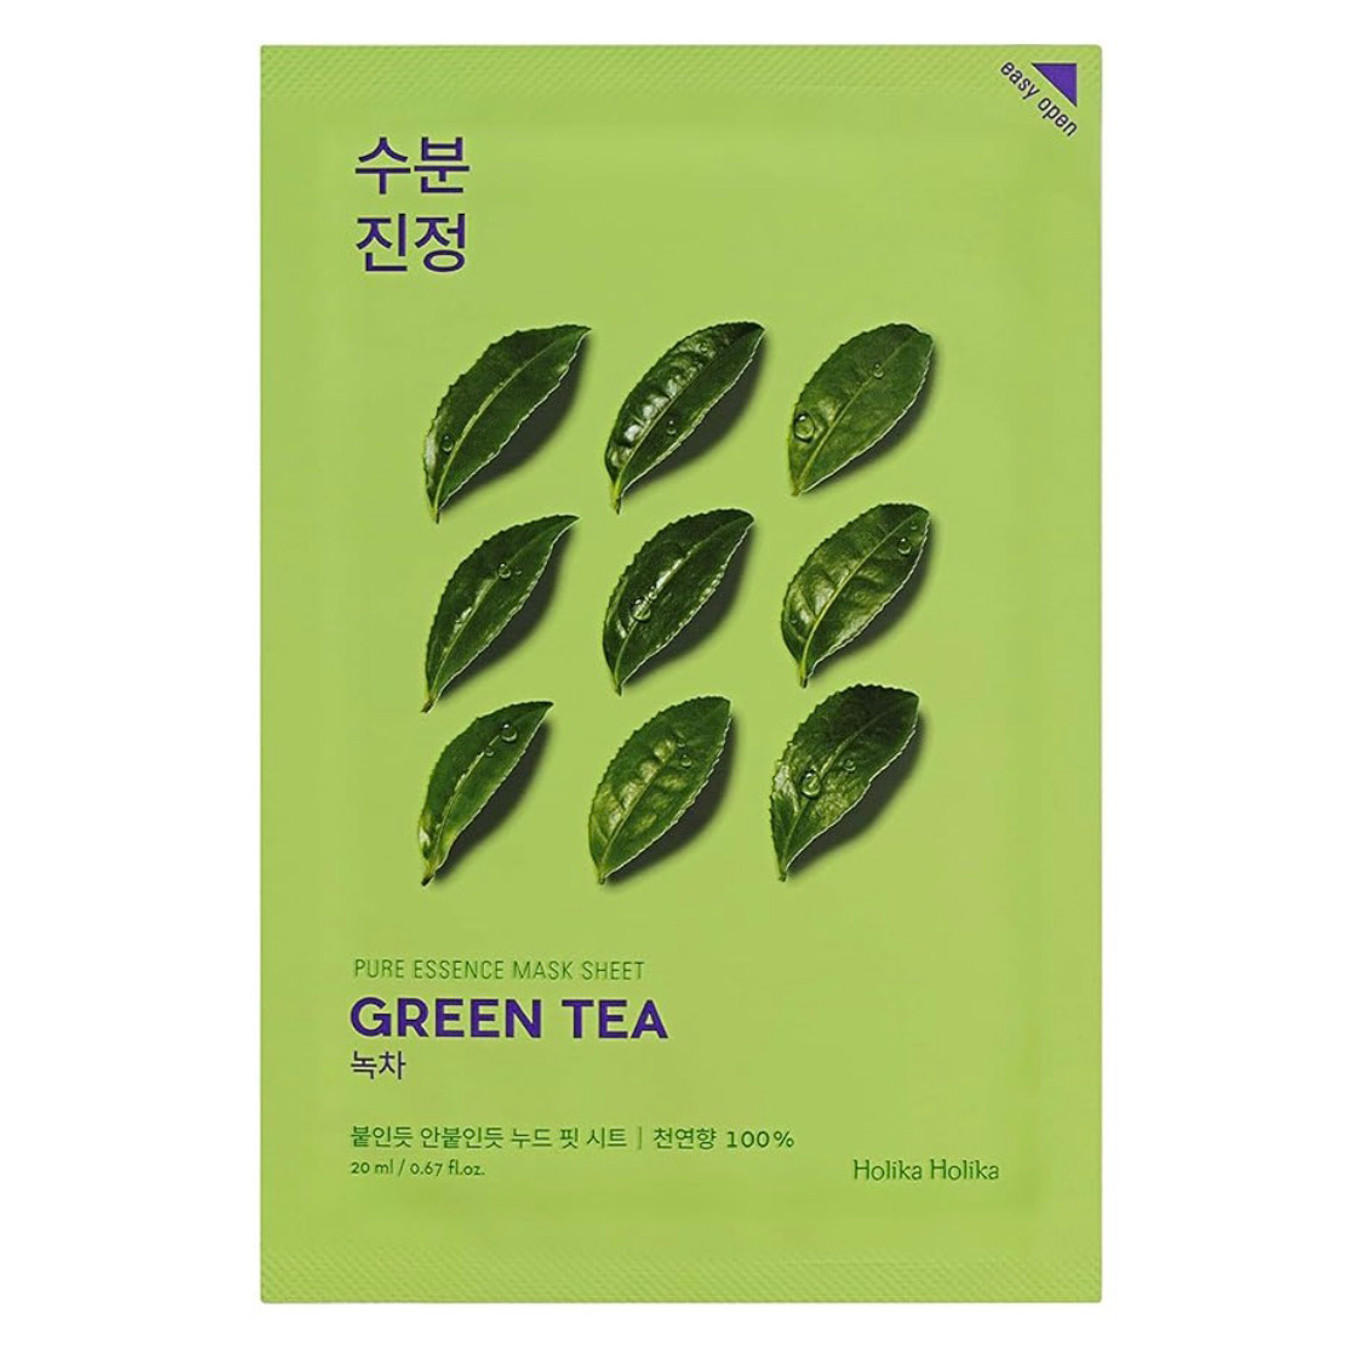 [Holika Holika] Pure Essence Mask Sheet - Green Tea (1 sheet)